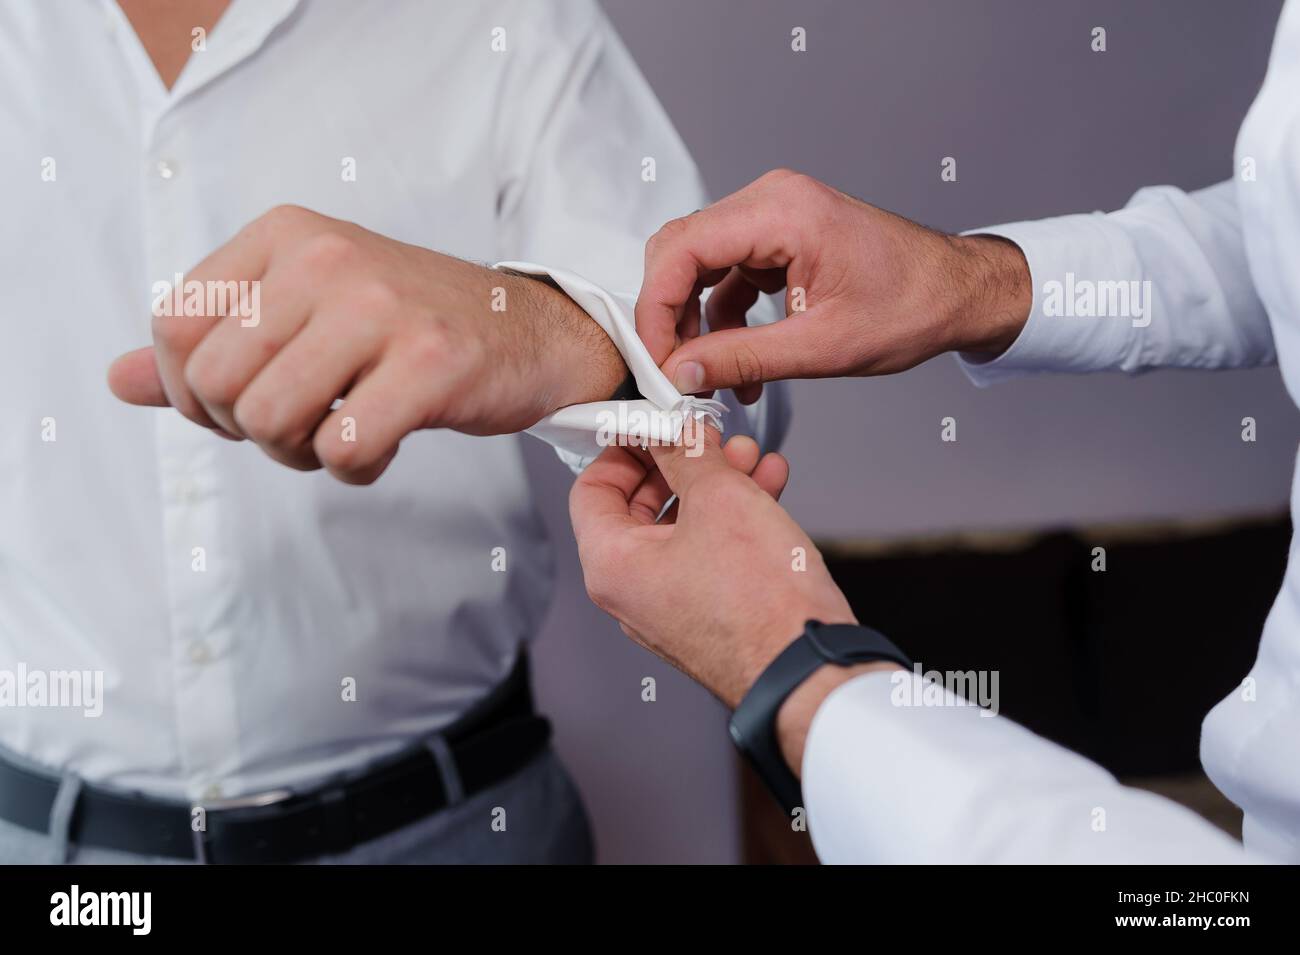 Homme attachant un lien de manchette sur la chemise.Le marié fixe les boutons de manchette sur la chemise Banque D'Images